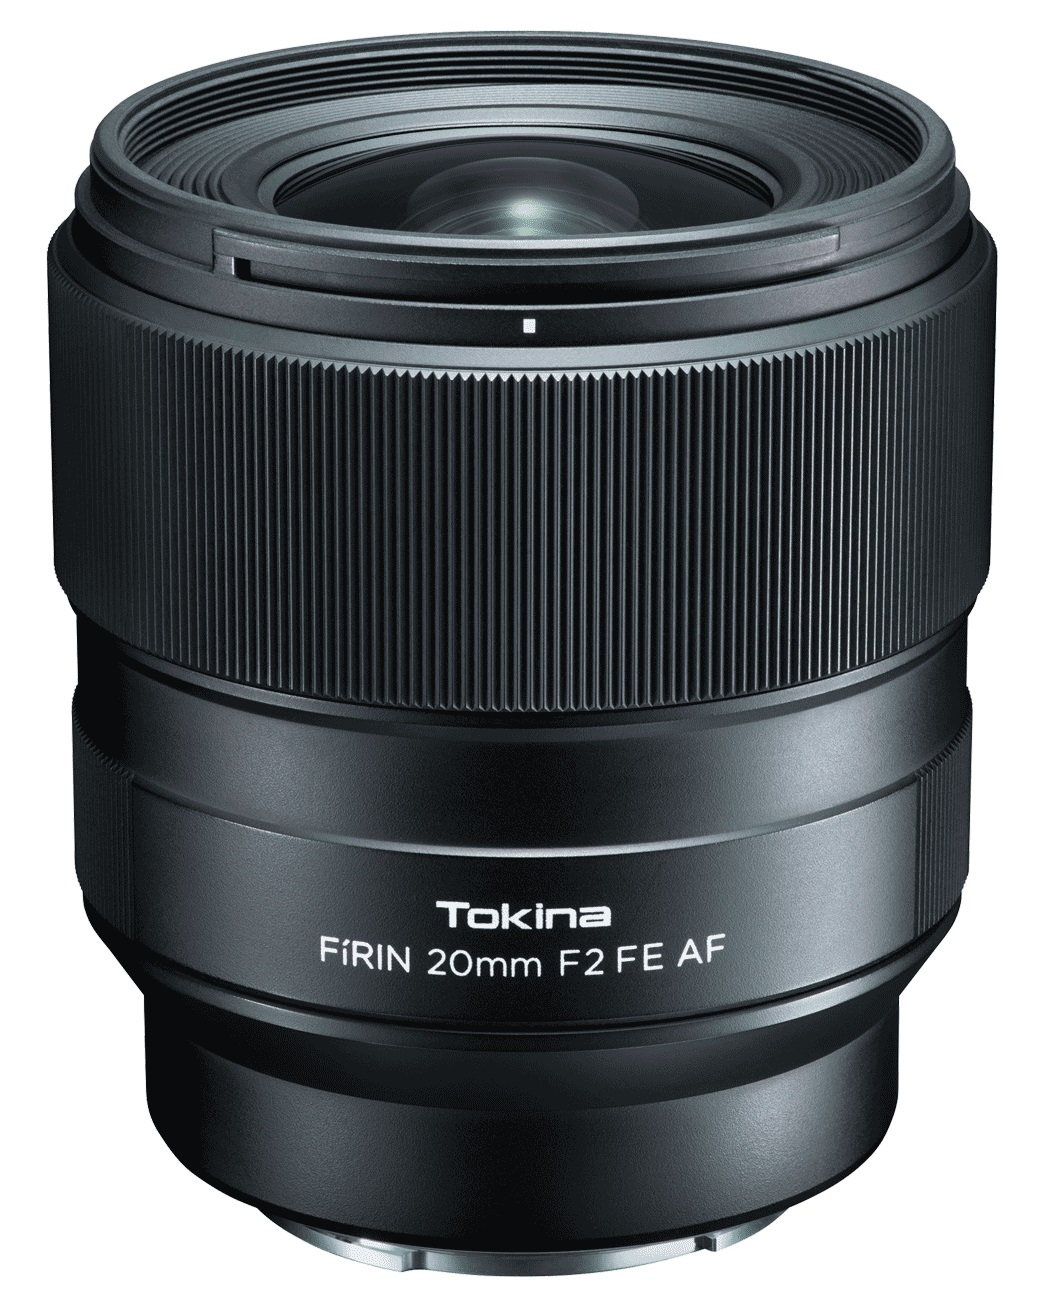 Объектив Tokina FIRIN 20mm F2 FE AF для Sony автофокус объектив sigma sony e af 24 mm f 3 5 dg dn c